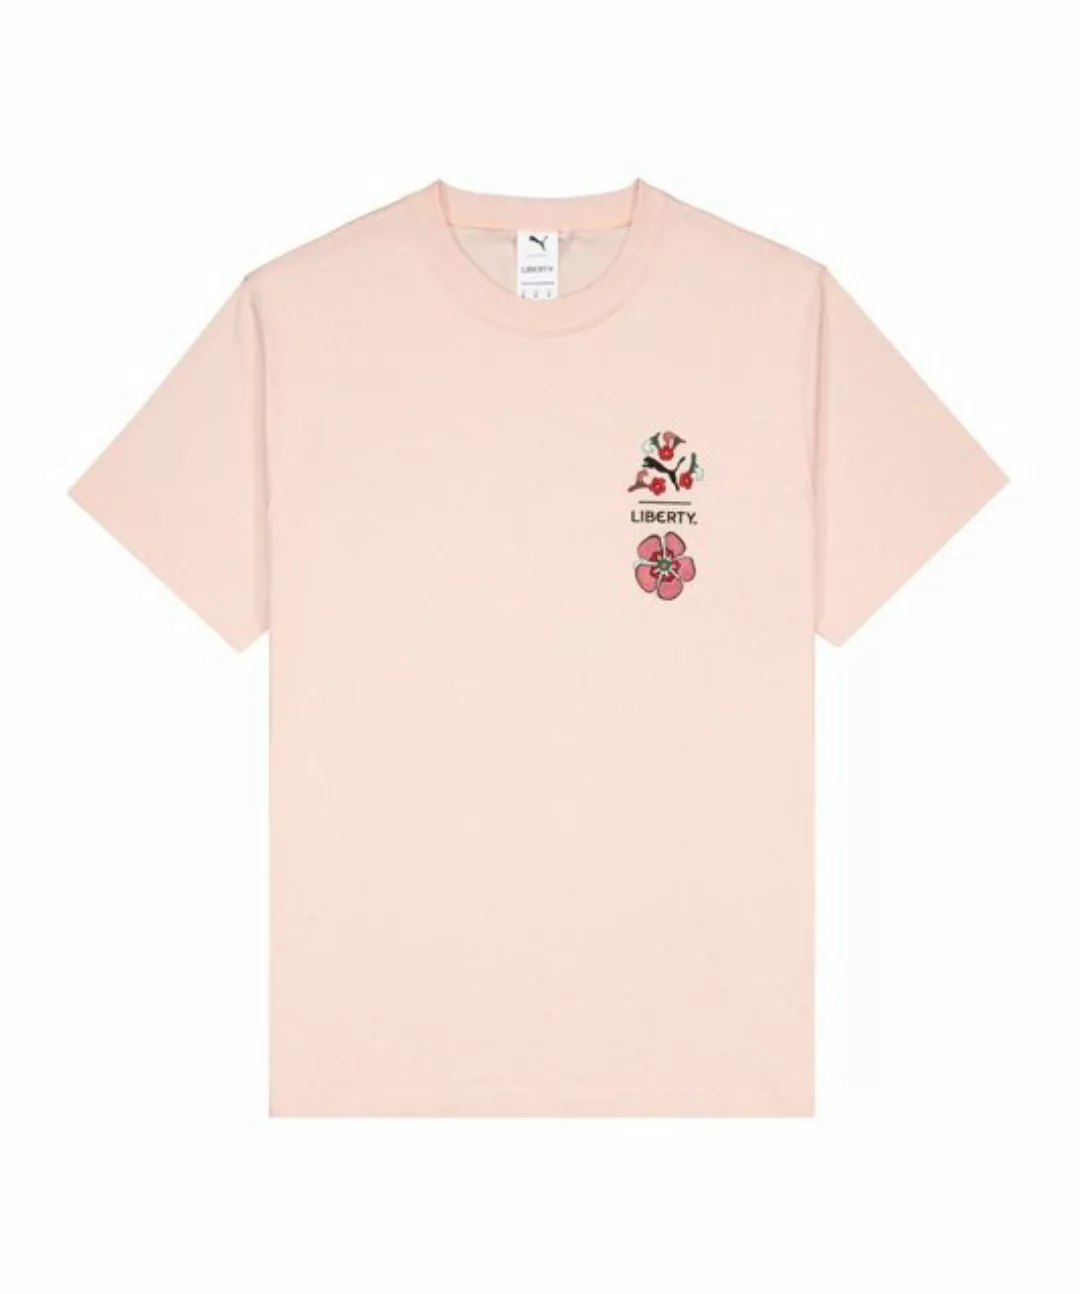 PUMA T-Shirt X LIBERTY Graphic T-Shirt Damen default günstig online kaufen